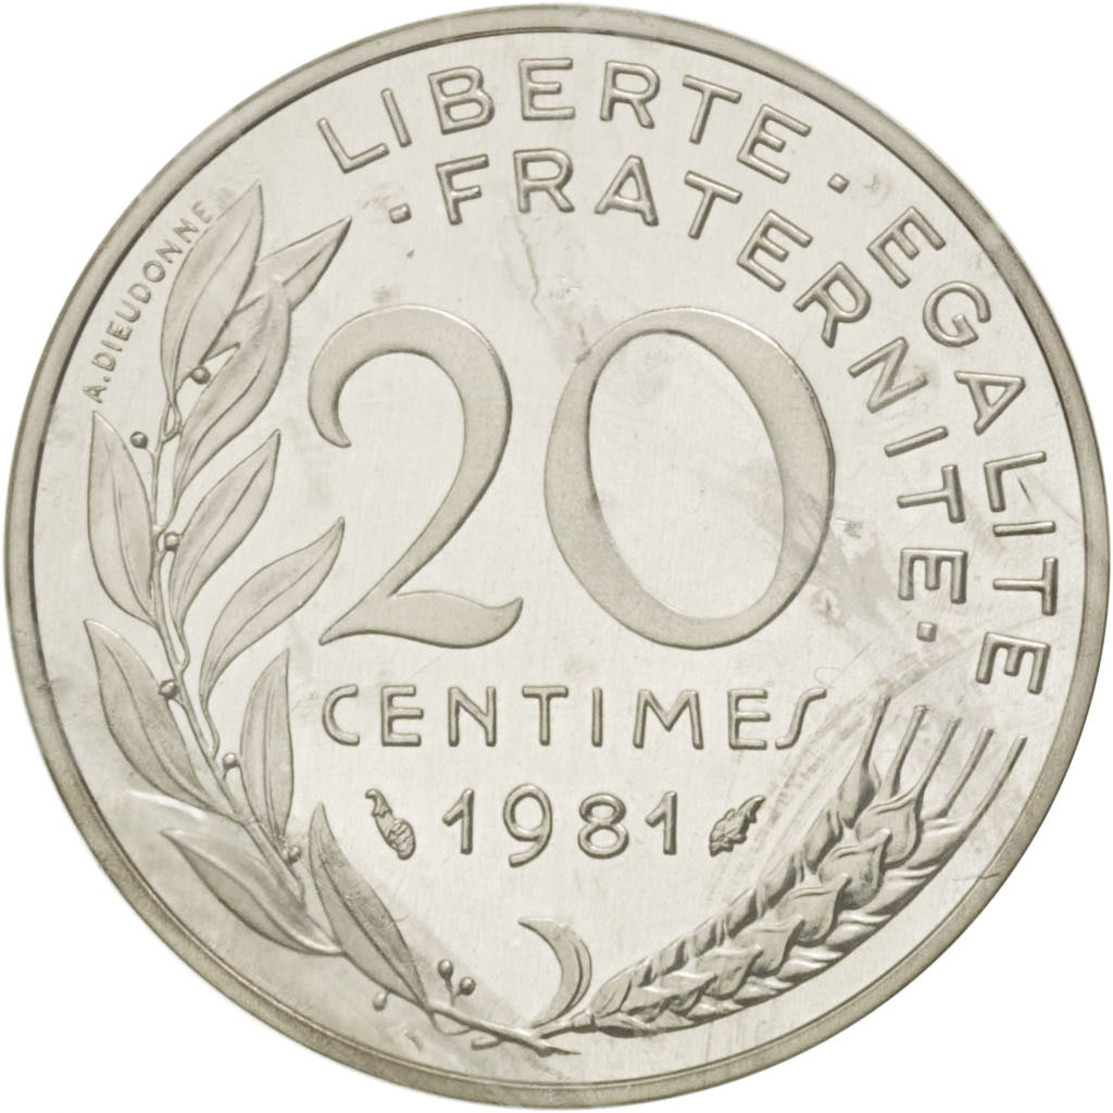 MONNAIE  20 Centimes Marianne, 1981, Couleur Argent Fautée/error Prix Depart 1 Euro - Variétés Et Curiosités